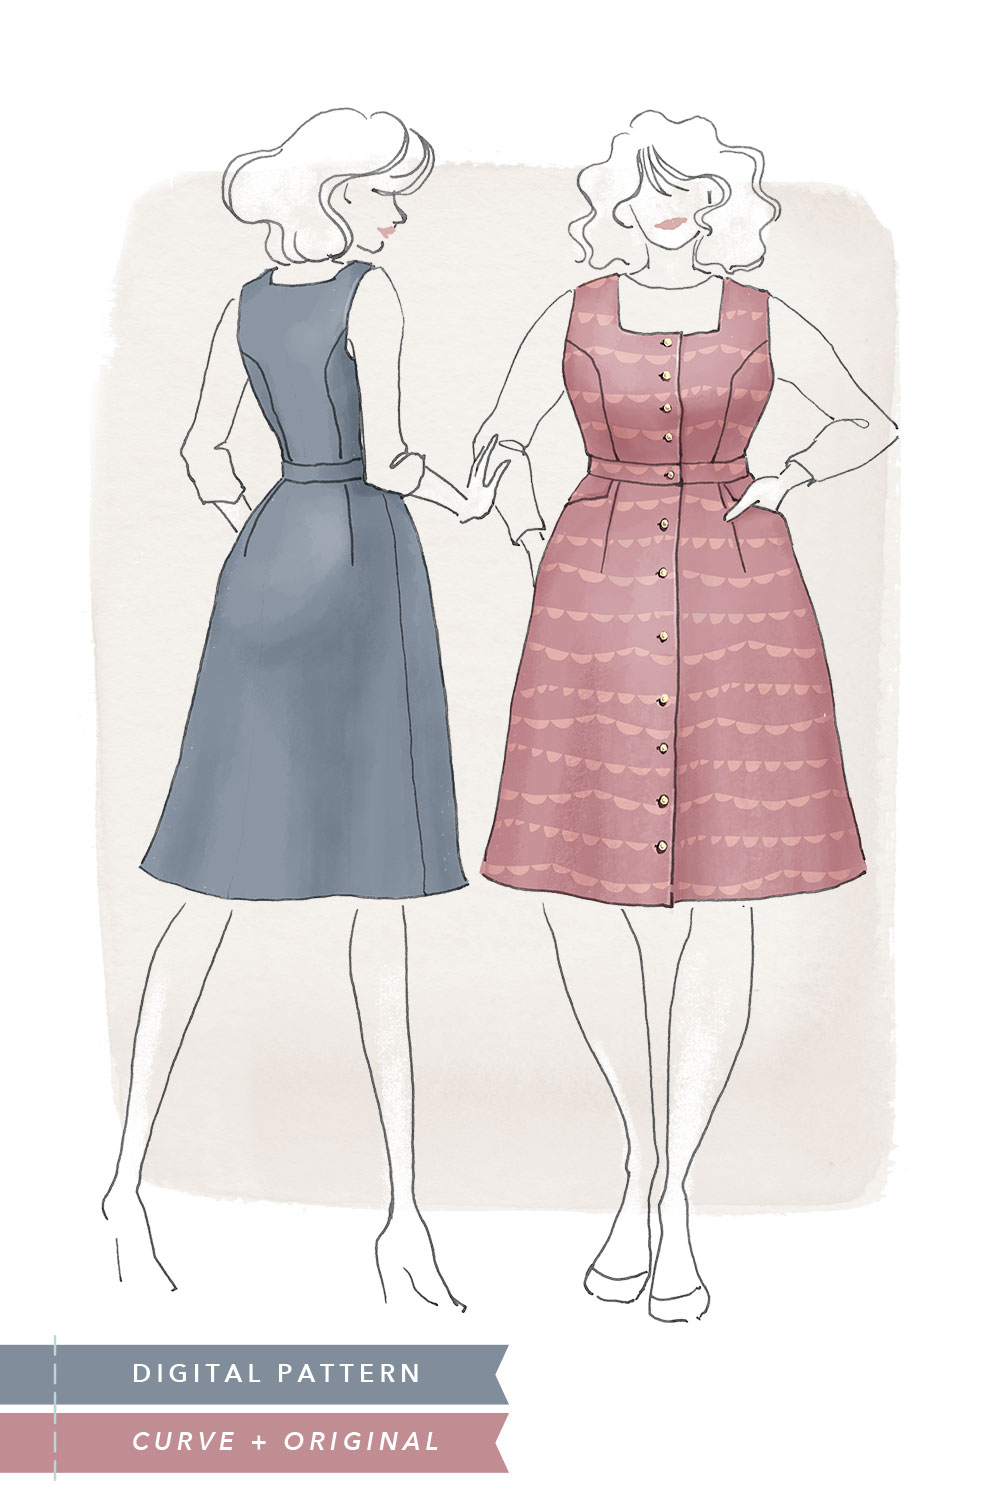 pinafore dress size 6